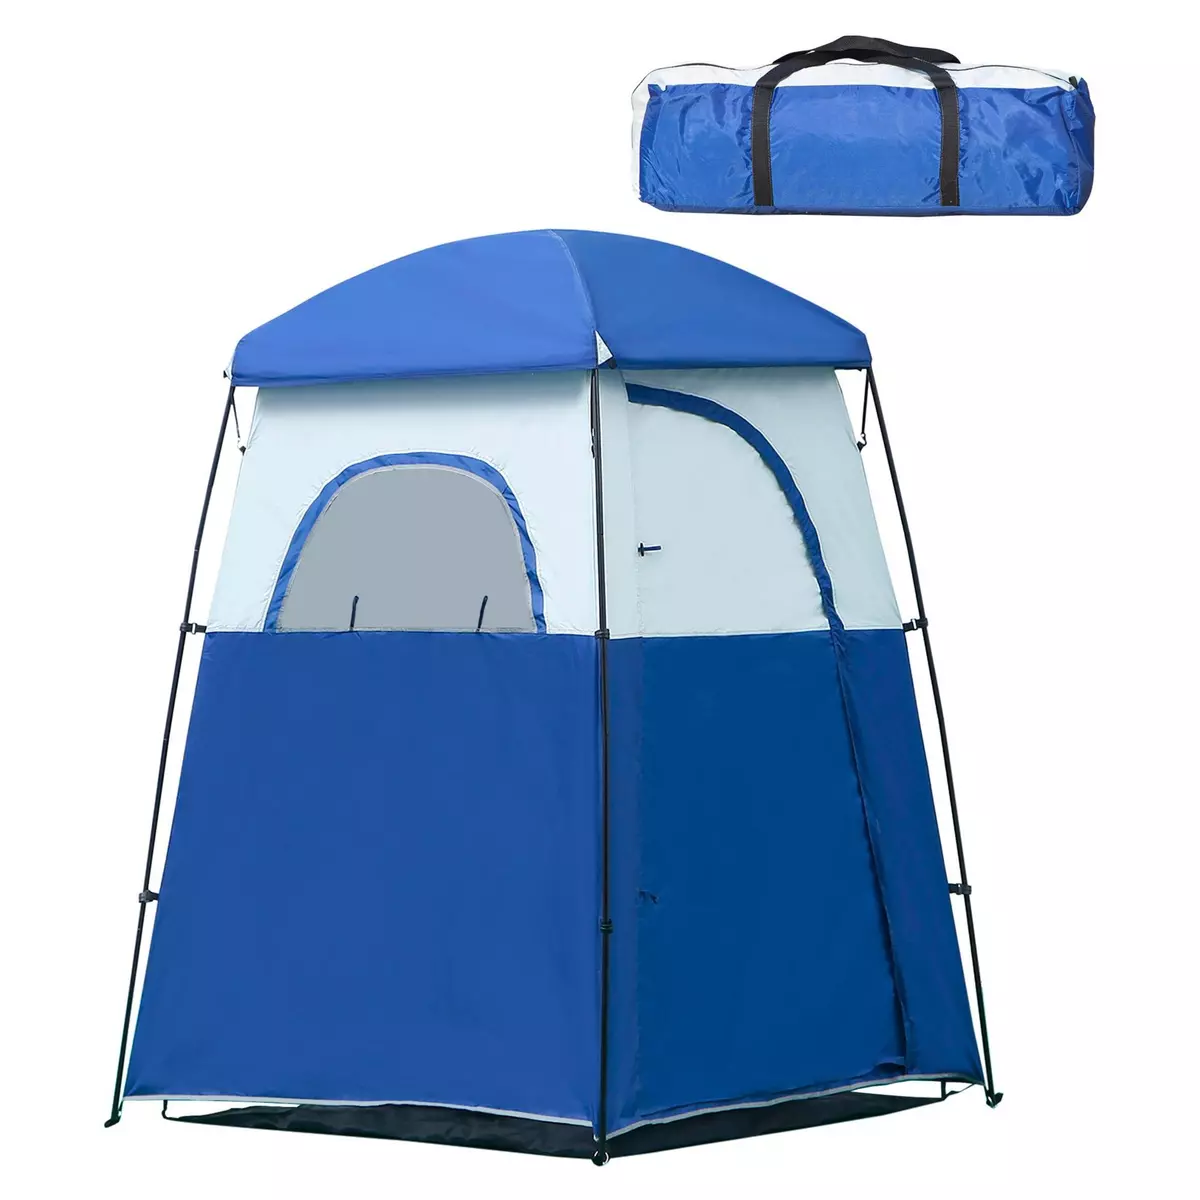 OUTSUNNY Tente cabine de douche portable pour camping 1-2 personnes sac de transport inclus étanche - Oxford - dim. 167L x 167l x 224H cm - bleu et blanc